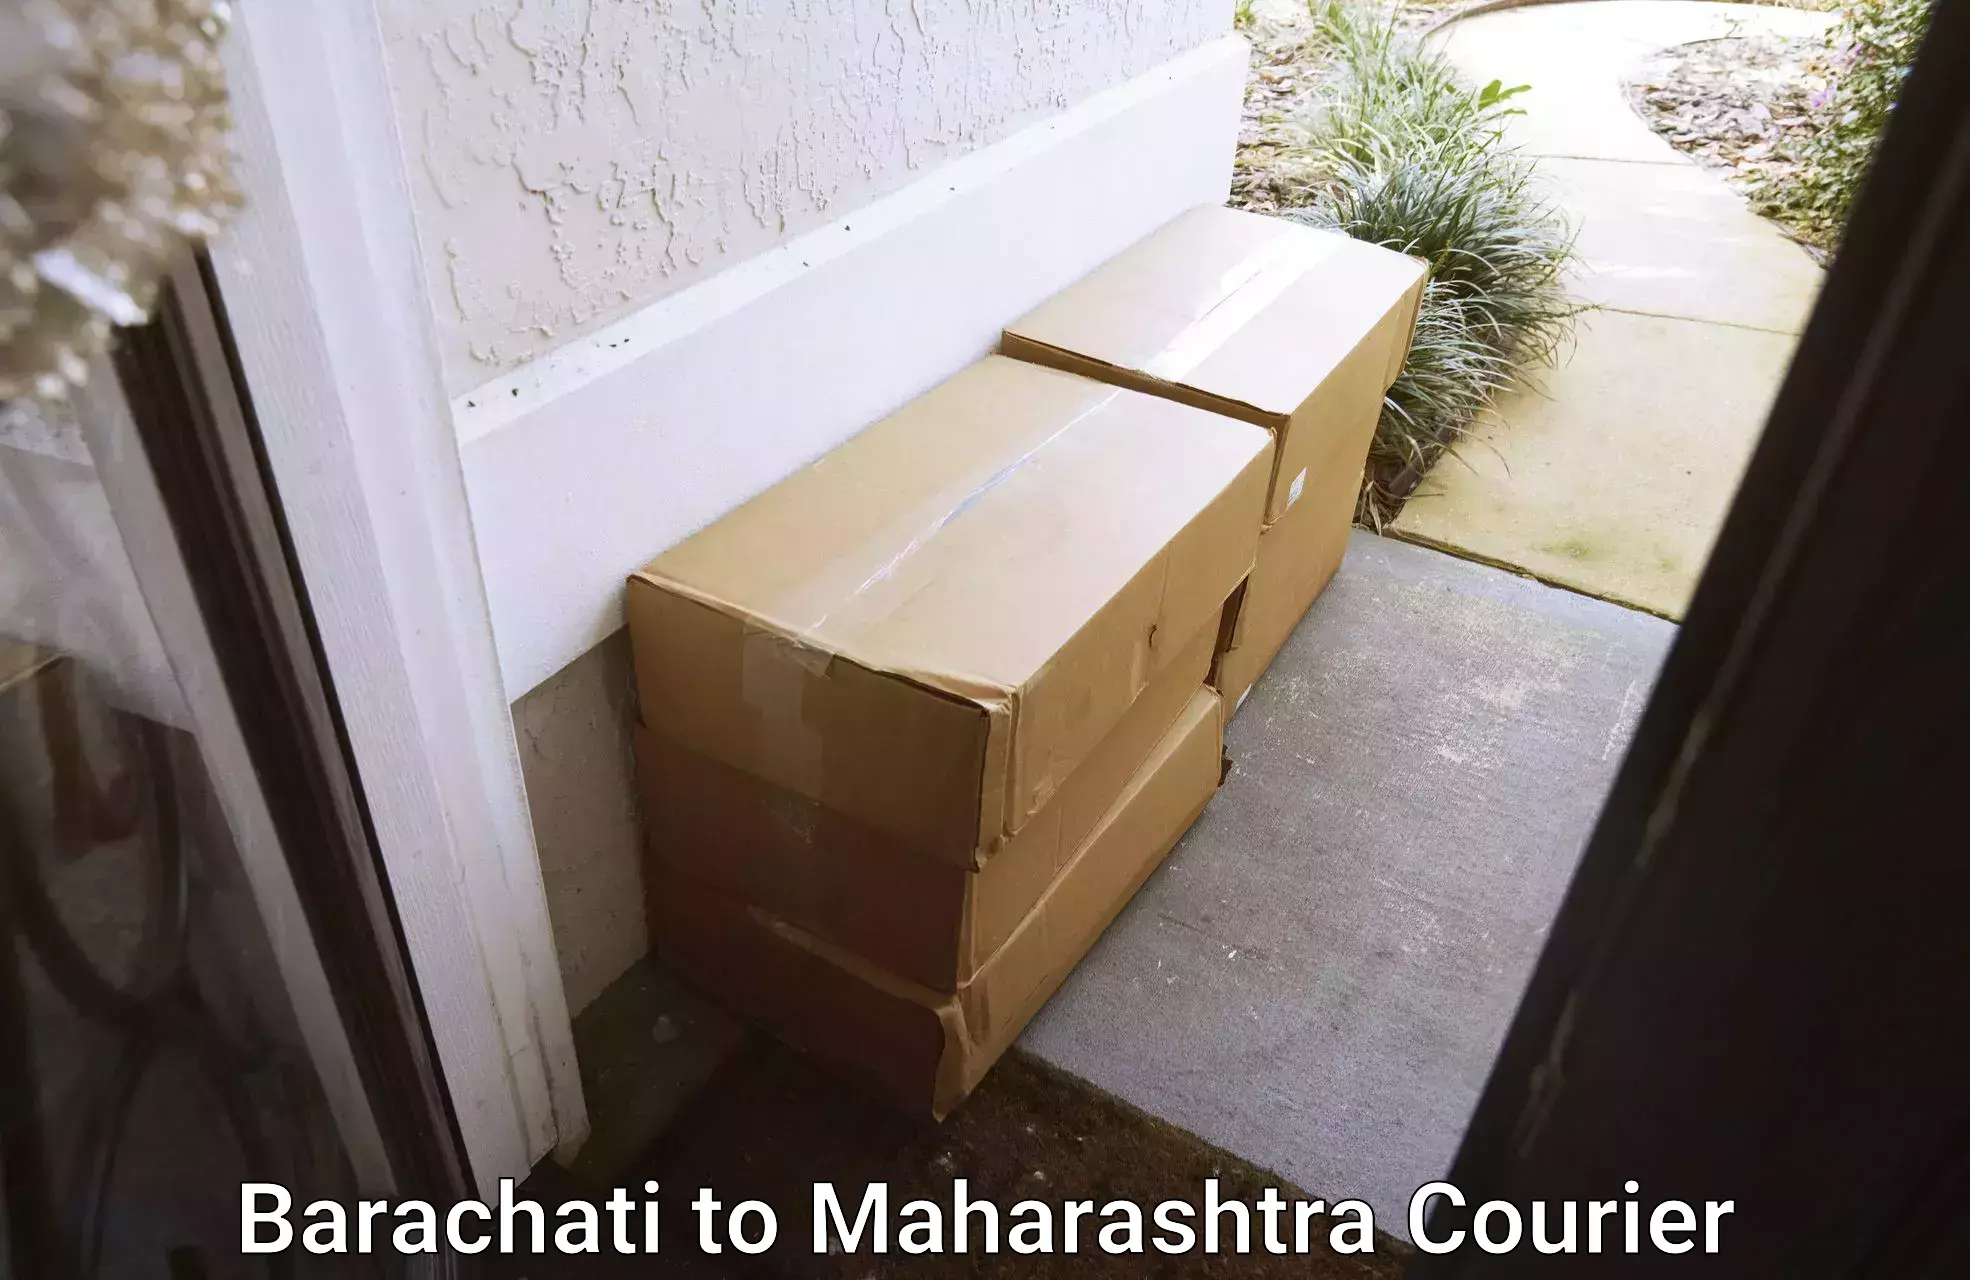 Specialized moving company Barachati to Maharashtra